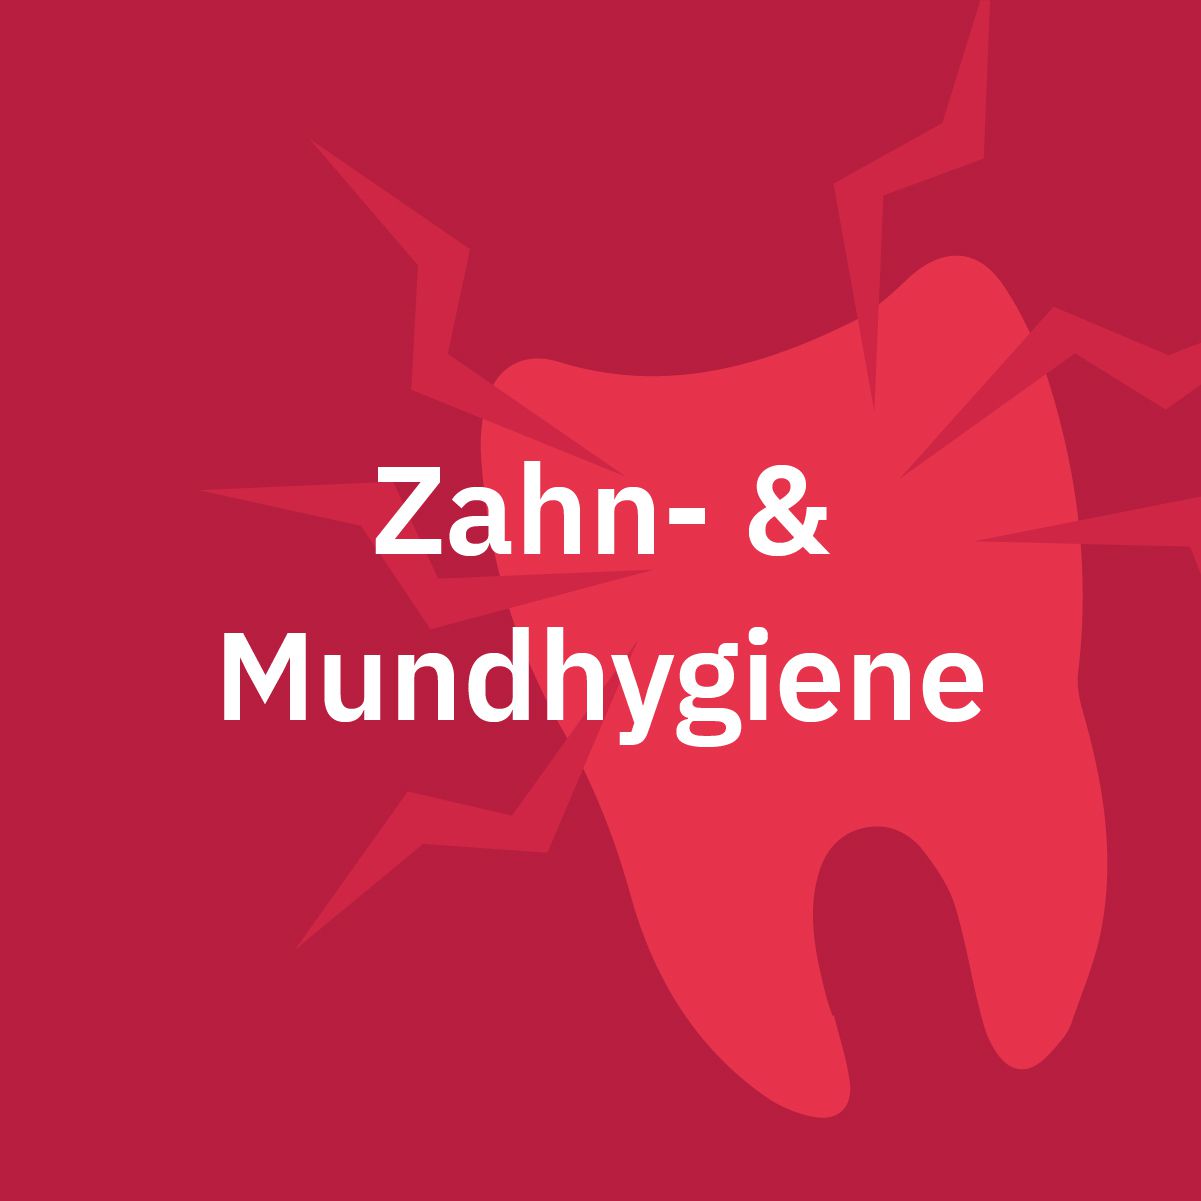 Zahn- & Mundhygiene